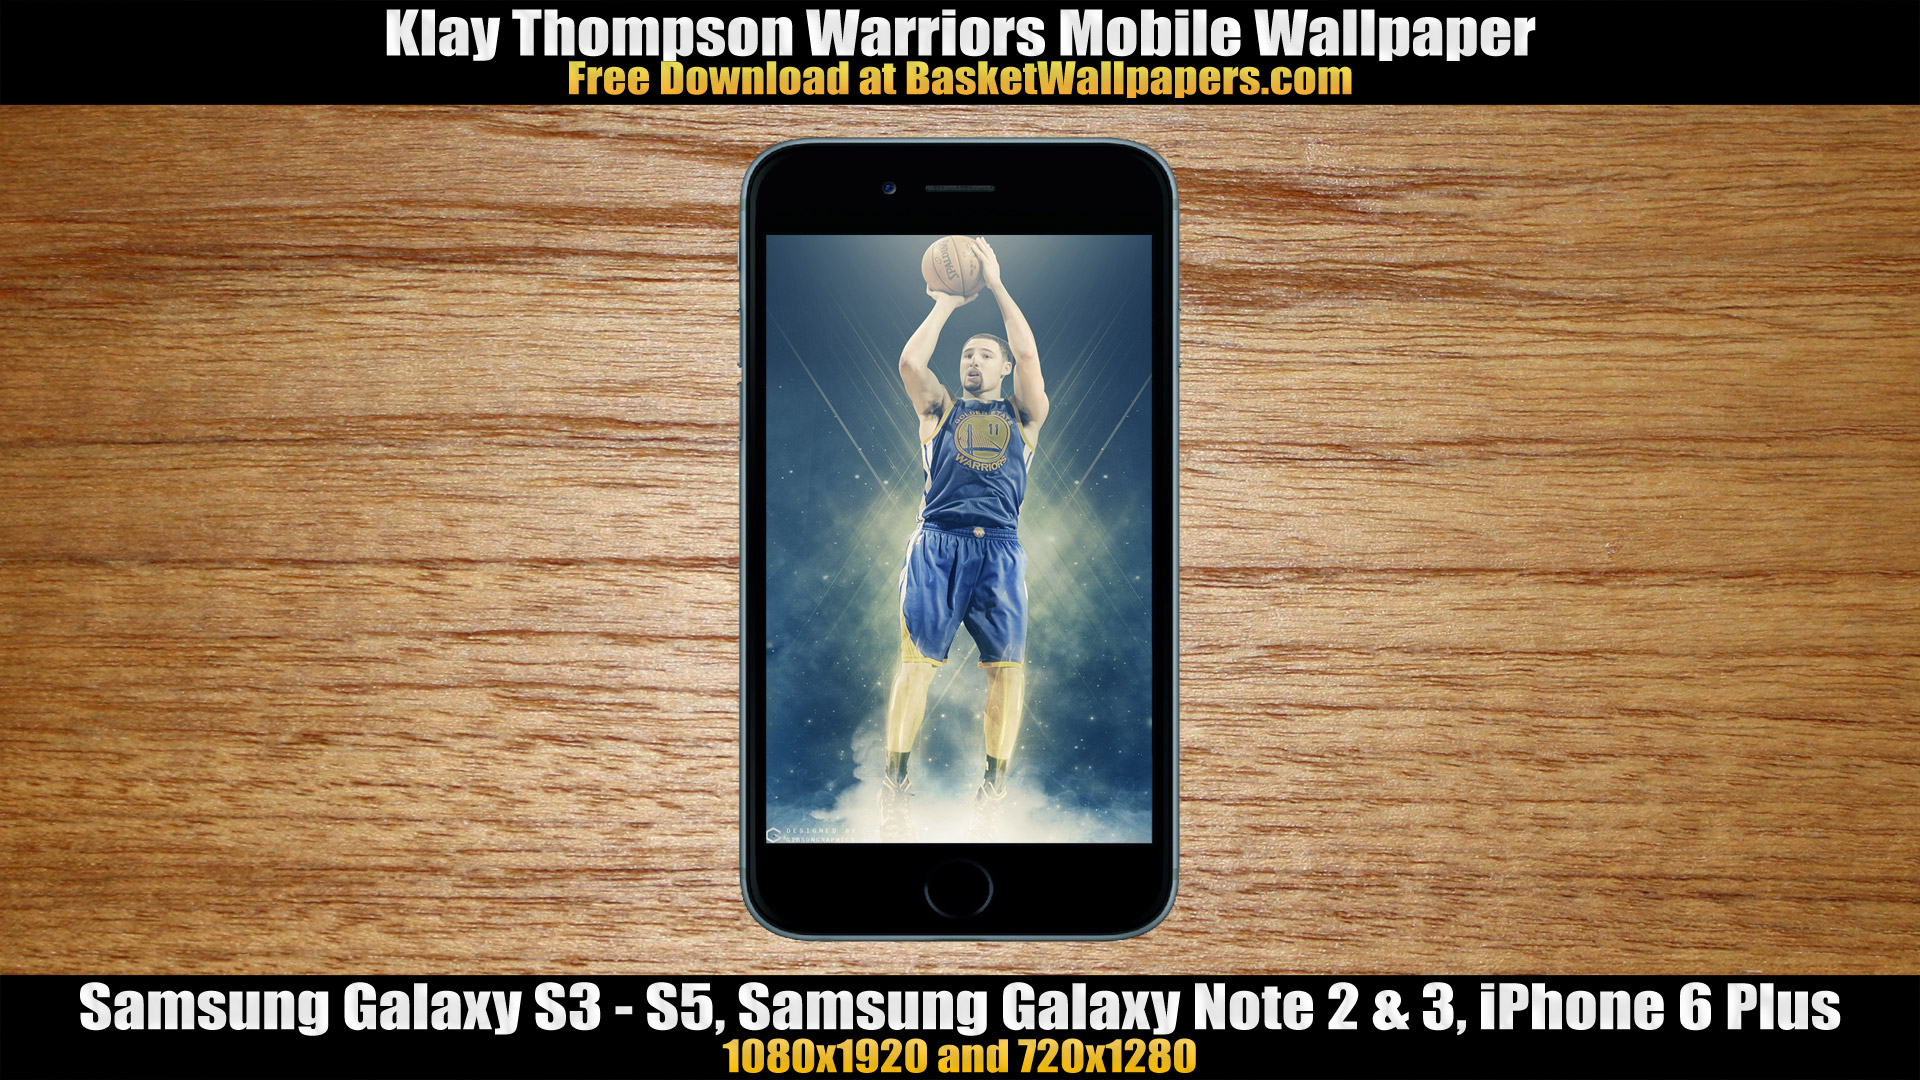 2011 NBA Draft Golden State Warriors Rookies Widescreen Wallpaper